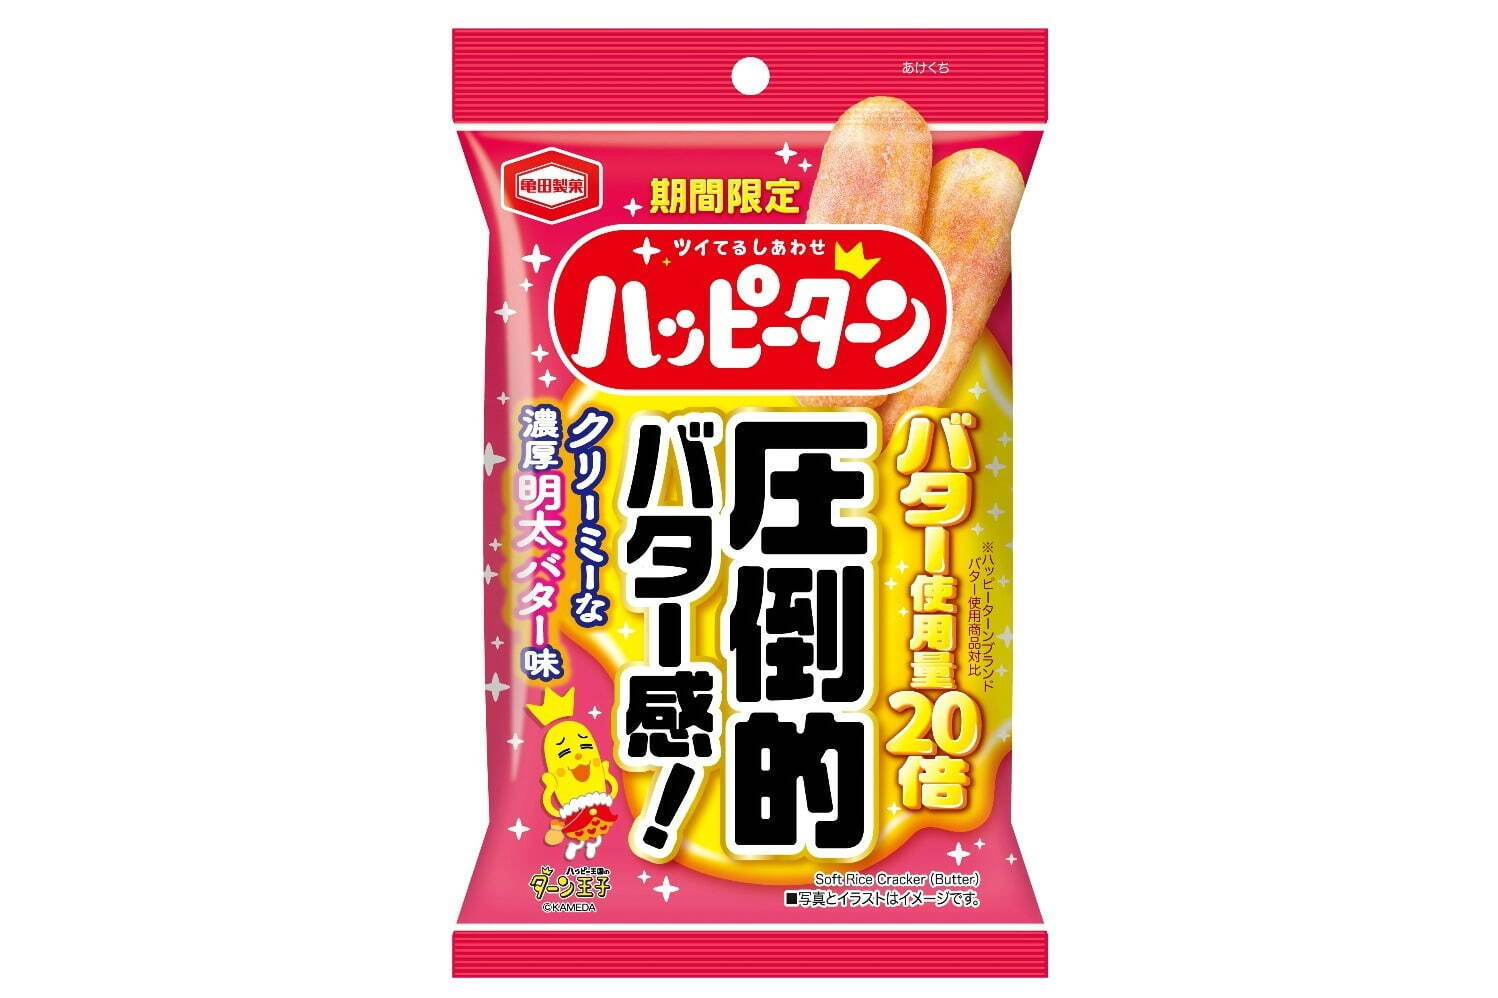 「ハッピーターン クリーミーな濃厚明太バター味」 129円